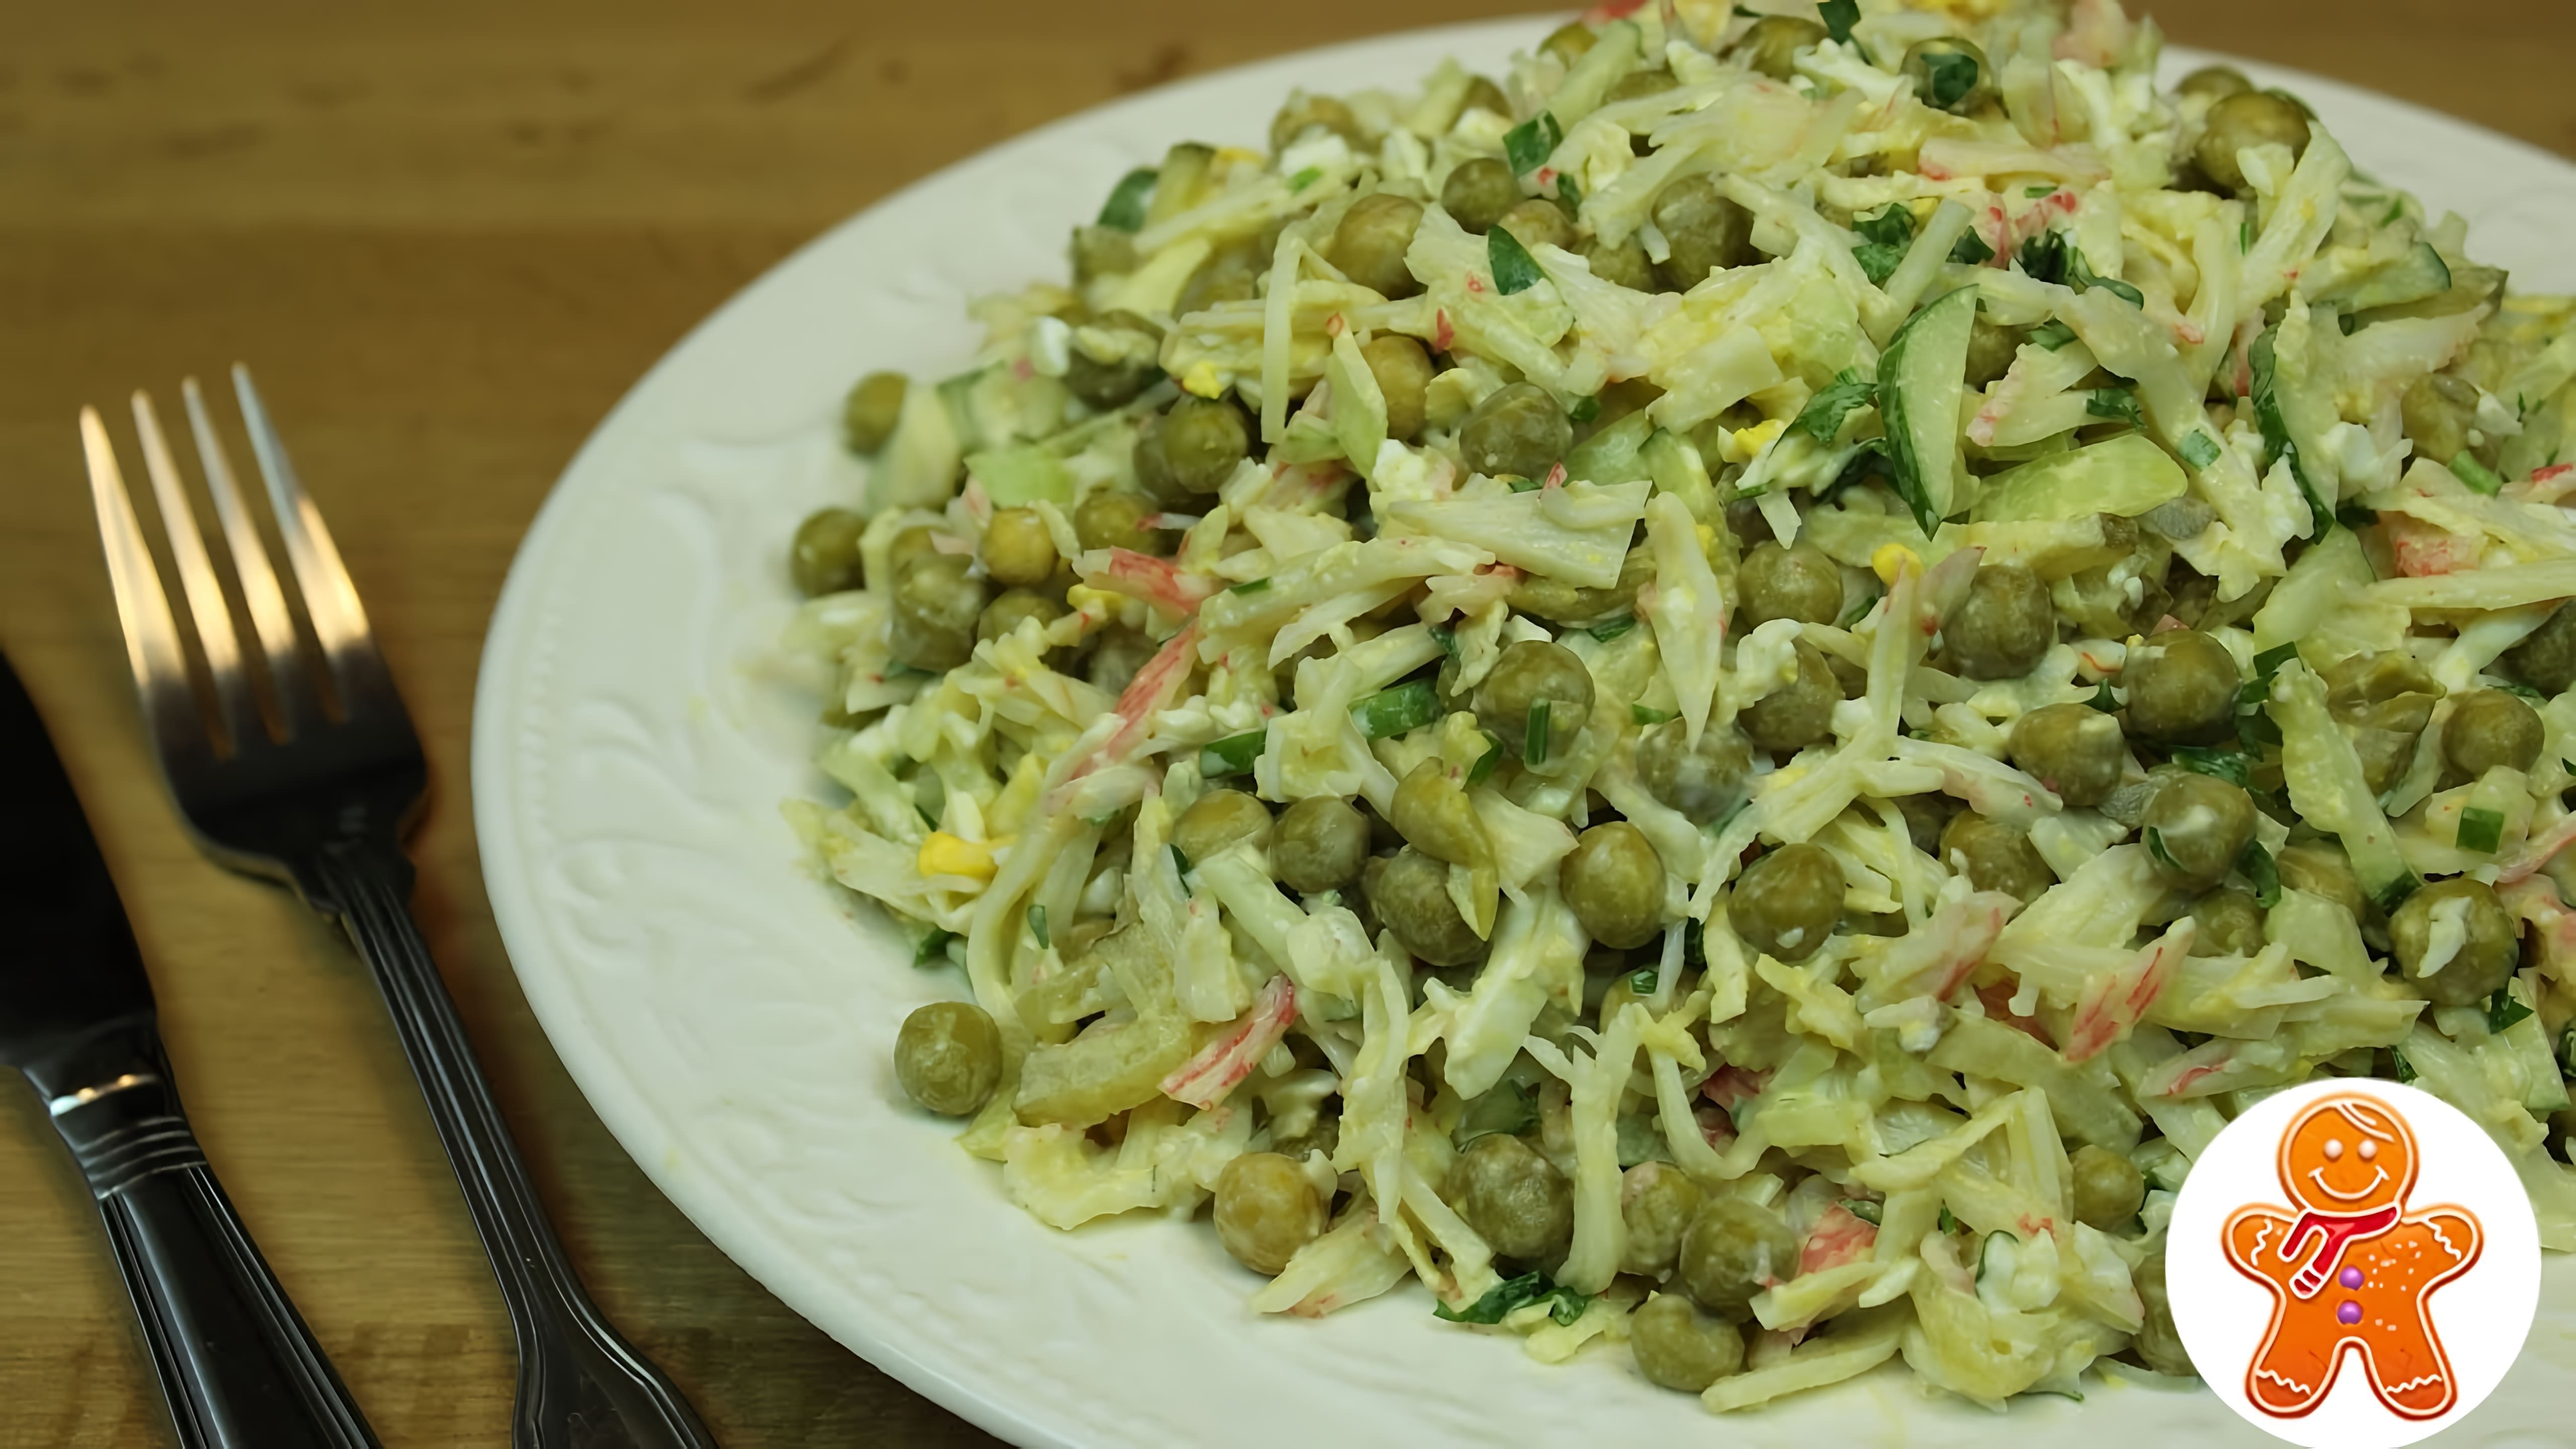 В этом видео демонстрируется рецепт крабового салата с зеленым горошком и маринованным огурцом